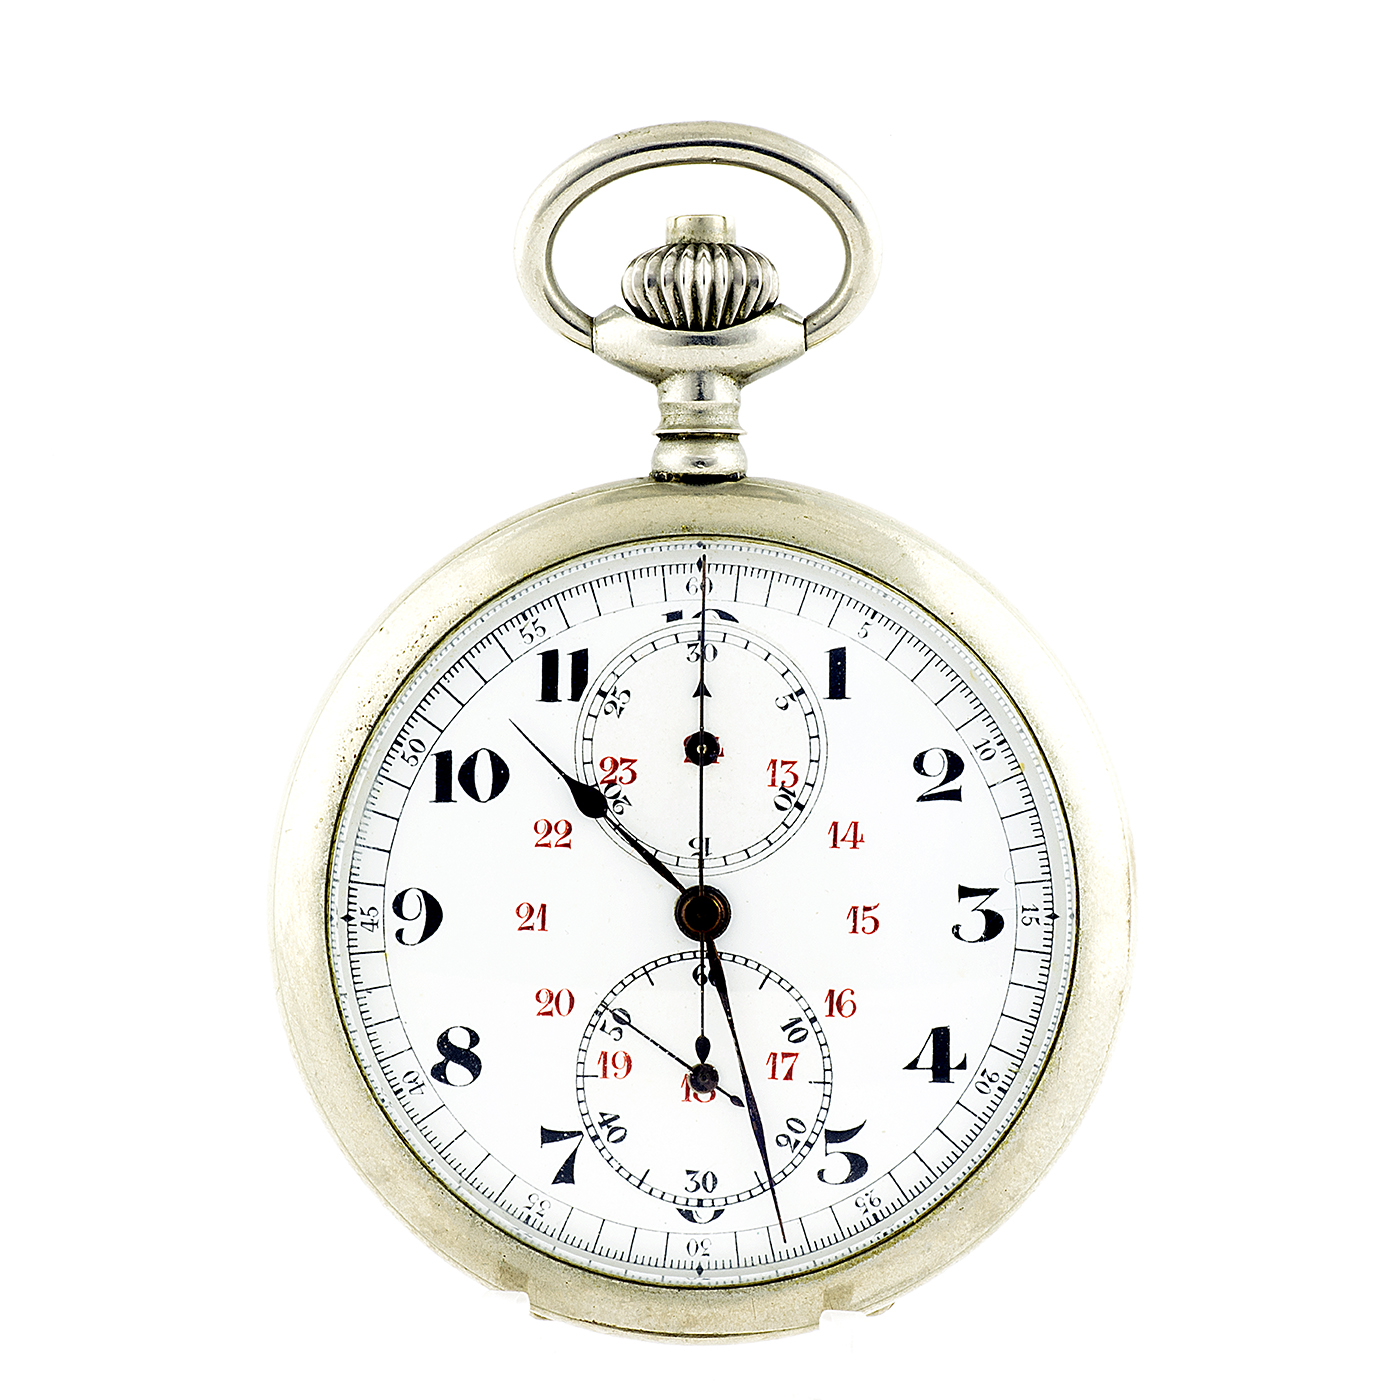 Reloj-Cronómetro Suizo, Lepine y remontoir. Suiza, ca. 1900